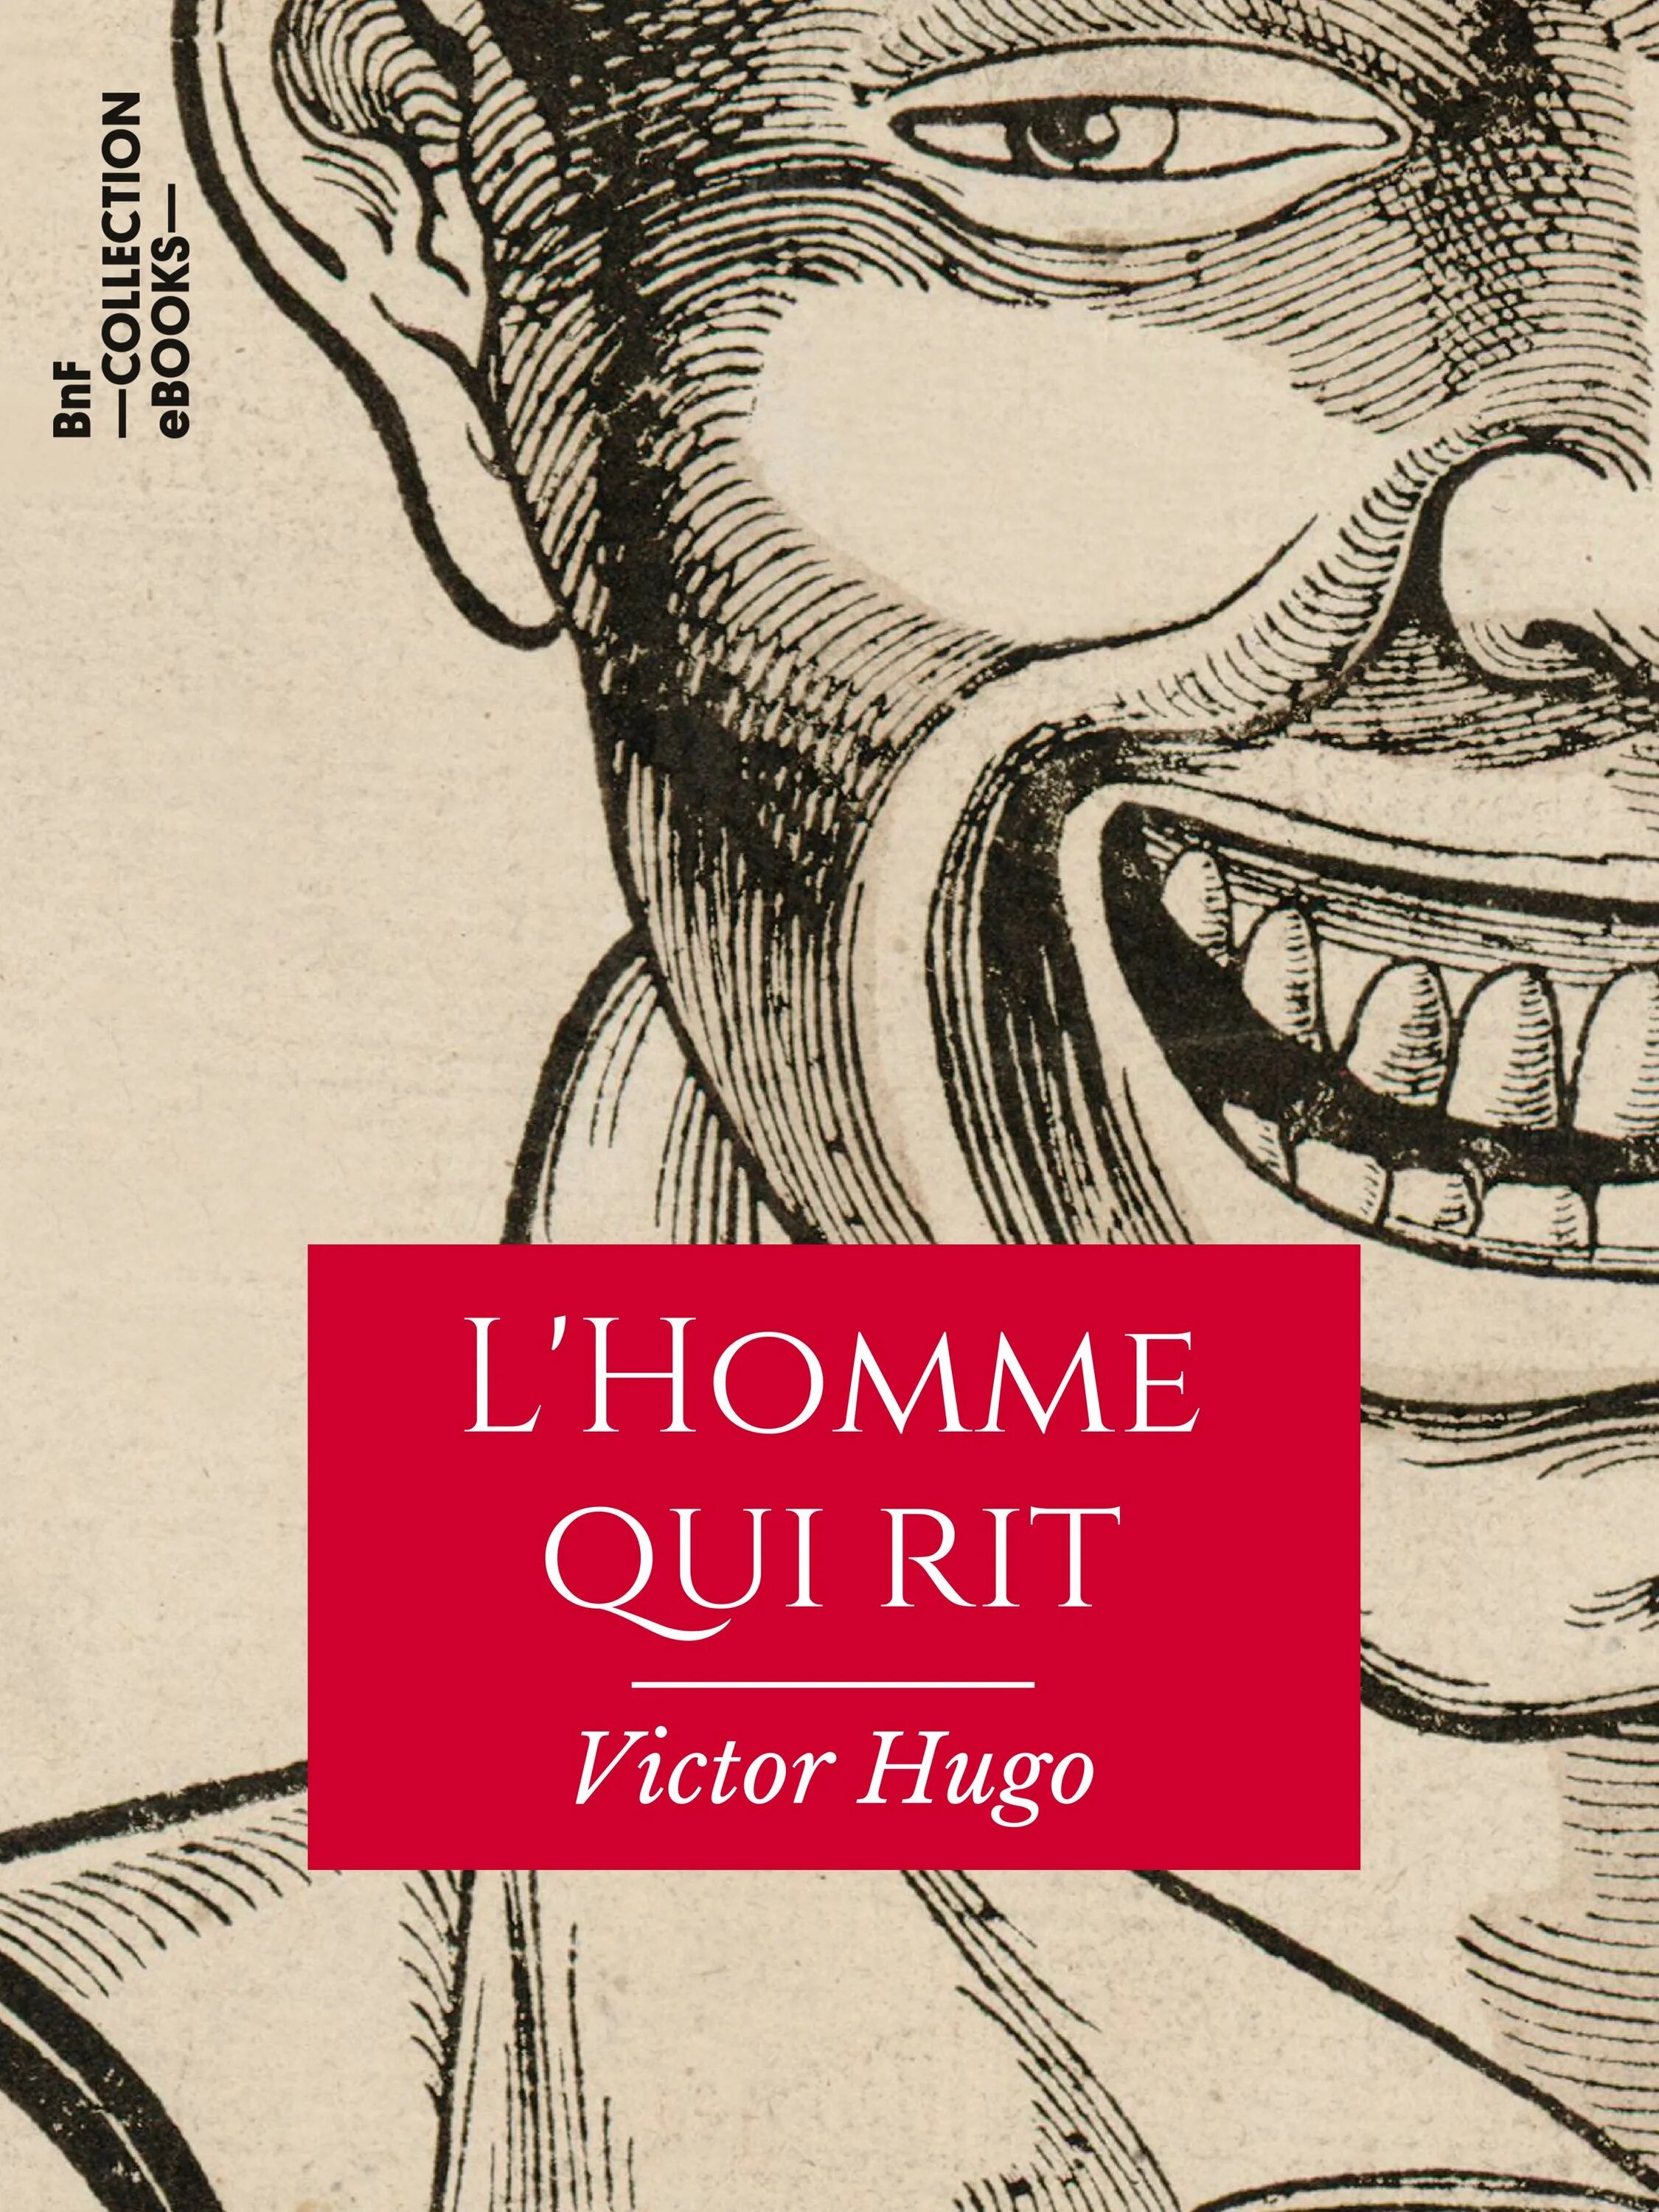 Victor Hugo "l'homme qui rit". L'homme qui rit French. L homme qui